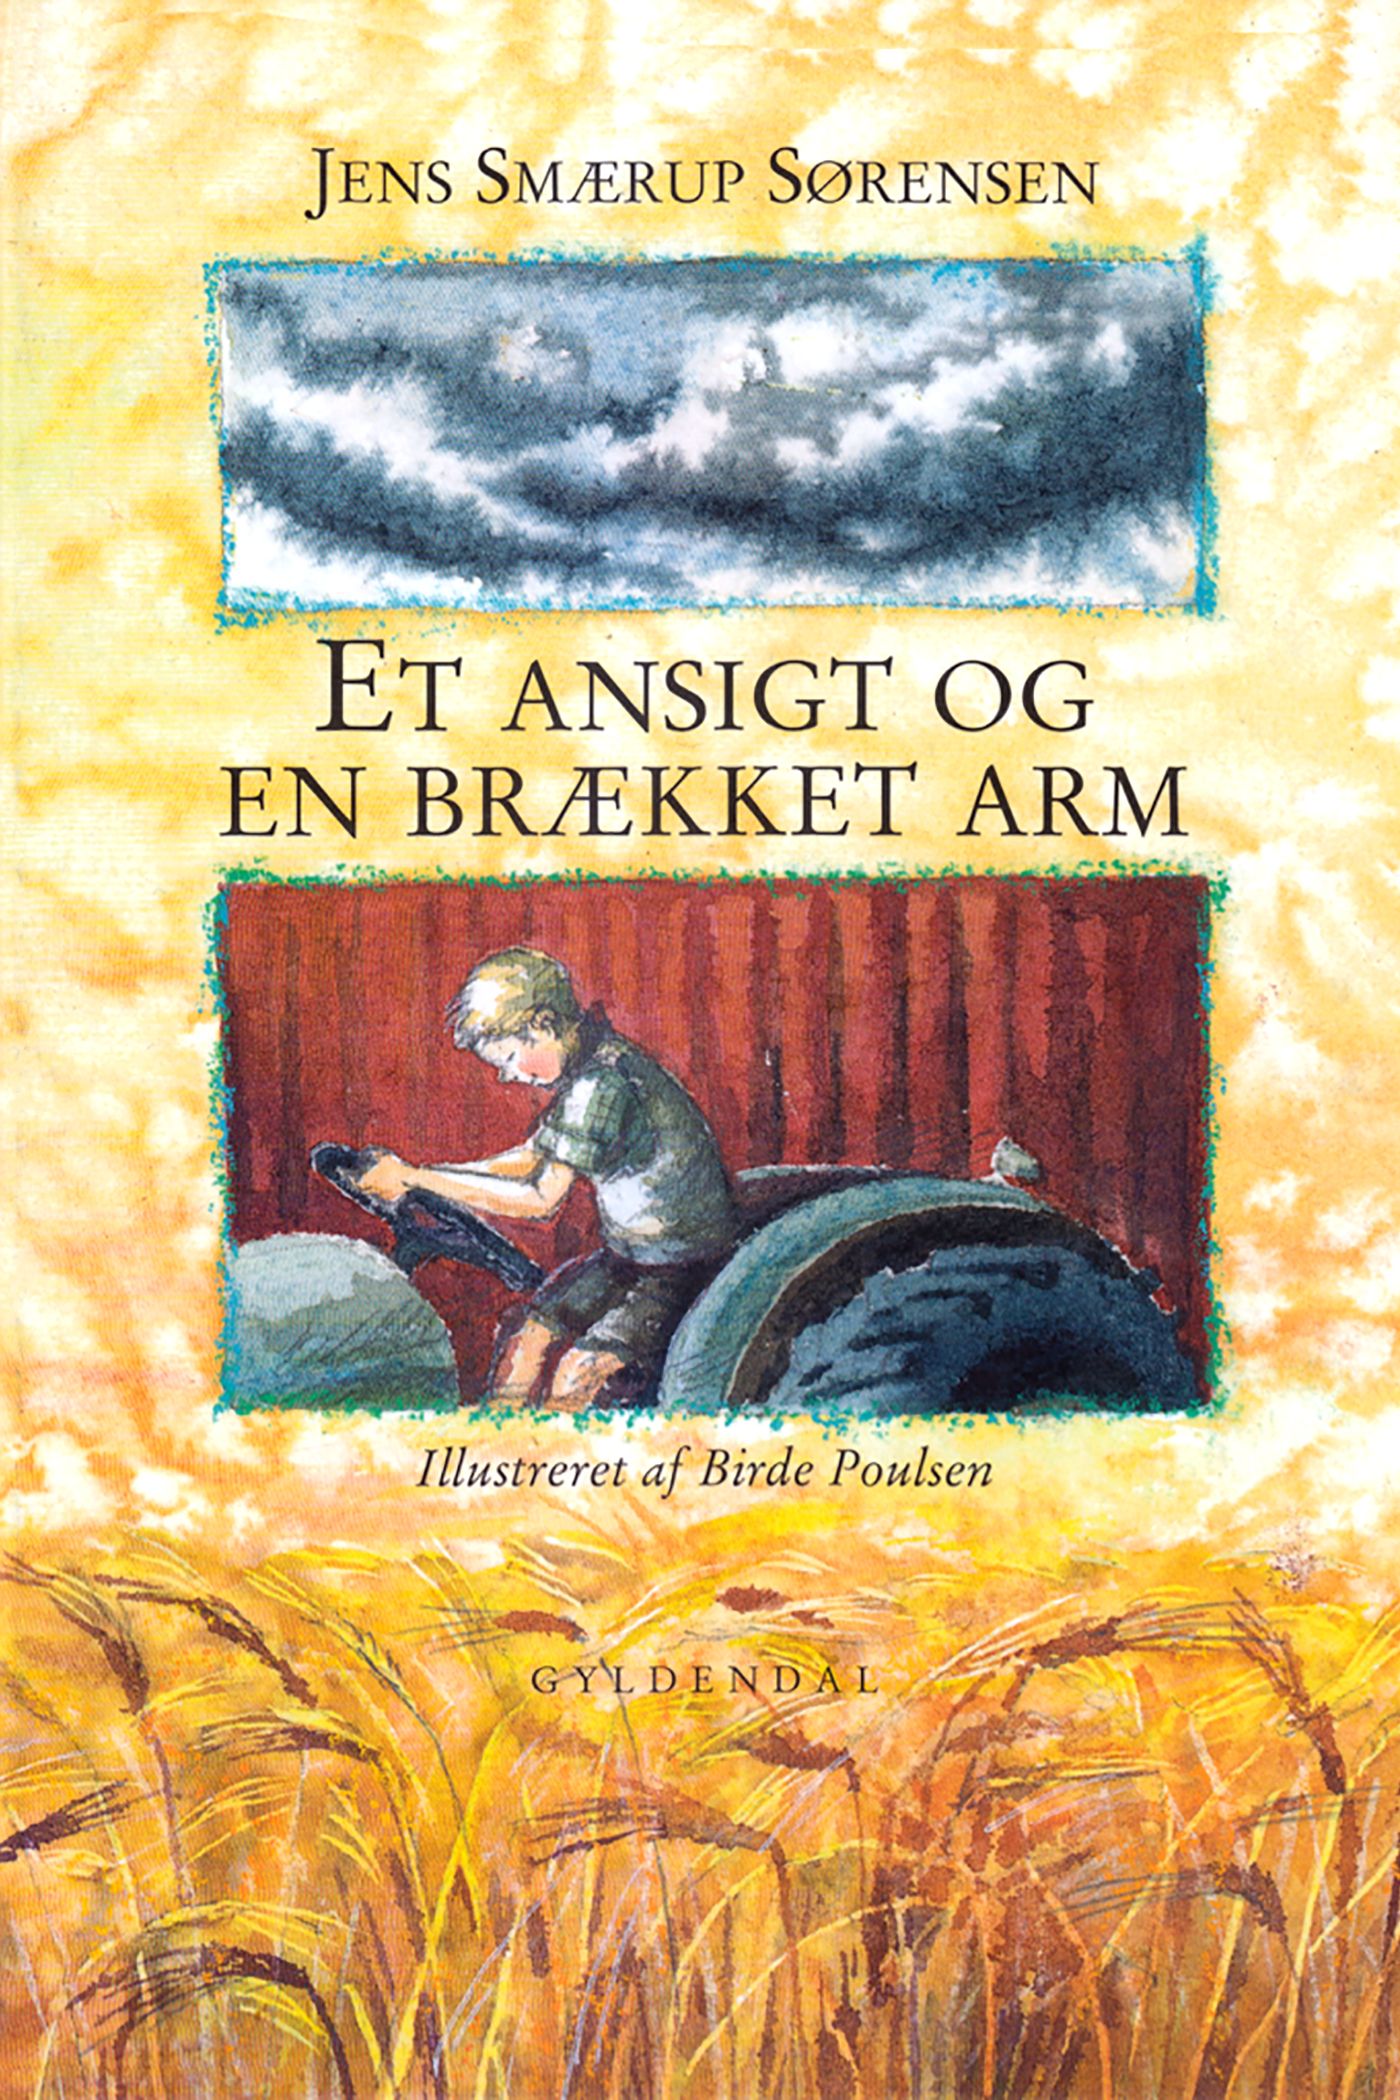 Et ansigt og en brækket arm, eBook by Jens Smærup Sørensen